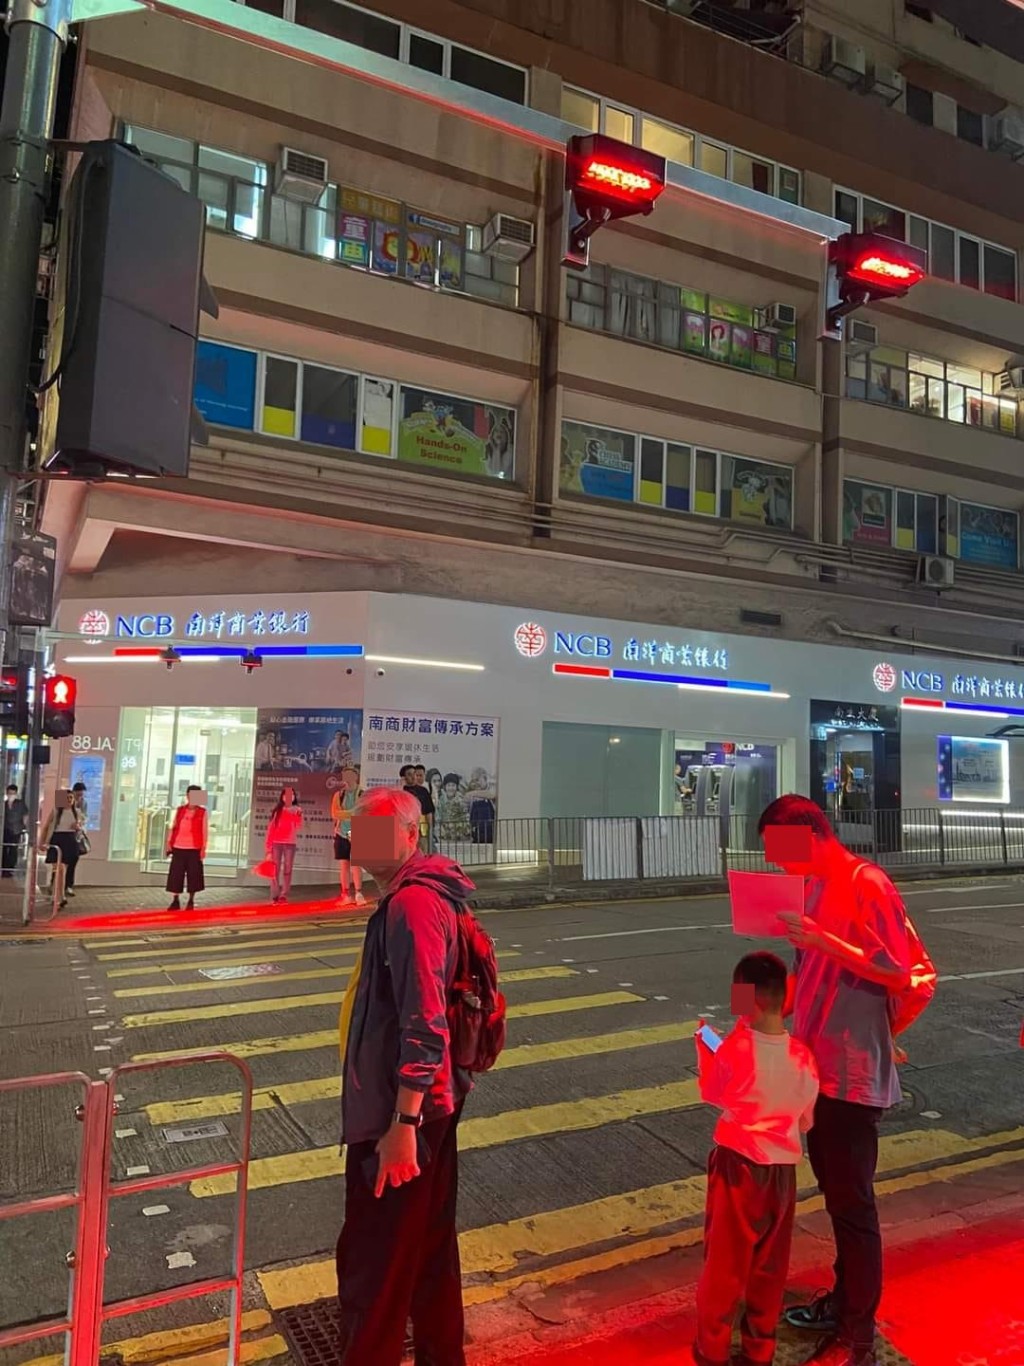 裝置會在「紅色人像」燈號亮起時，將紅光投射到行人路的等候位置上。fb大埔 TAI PO圖片